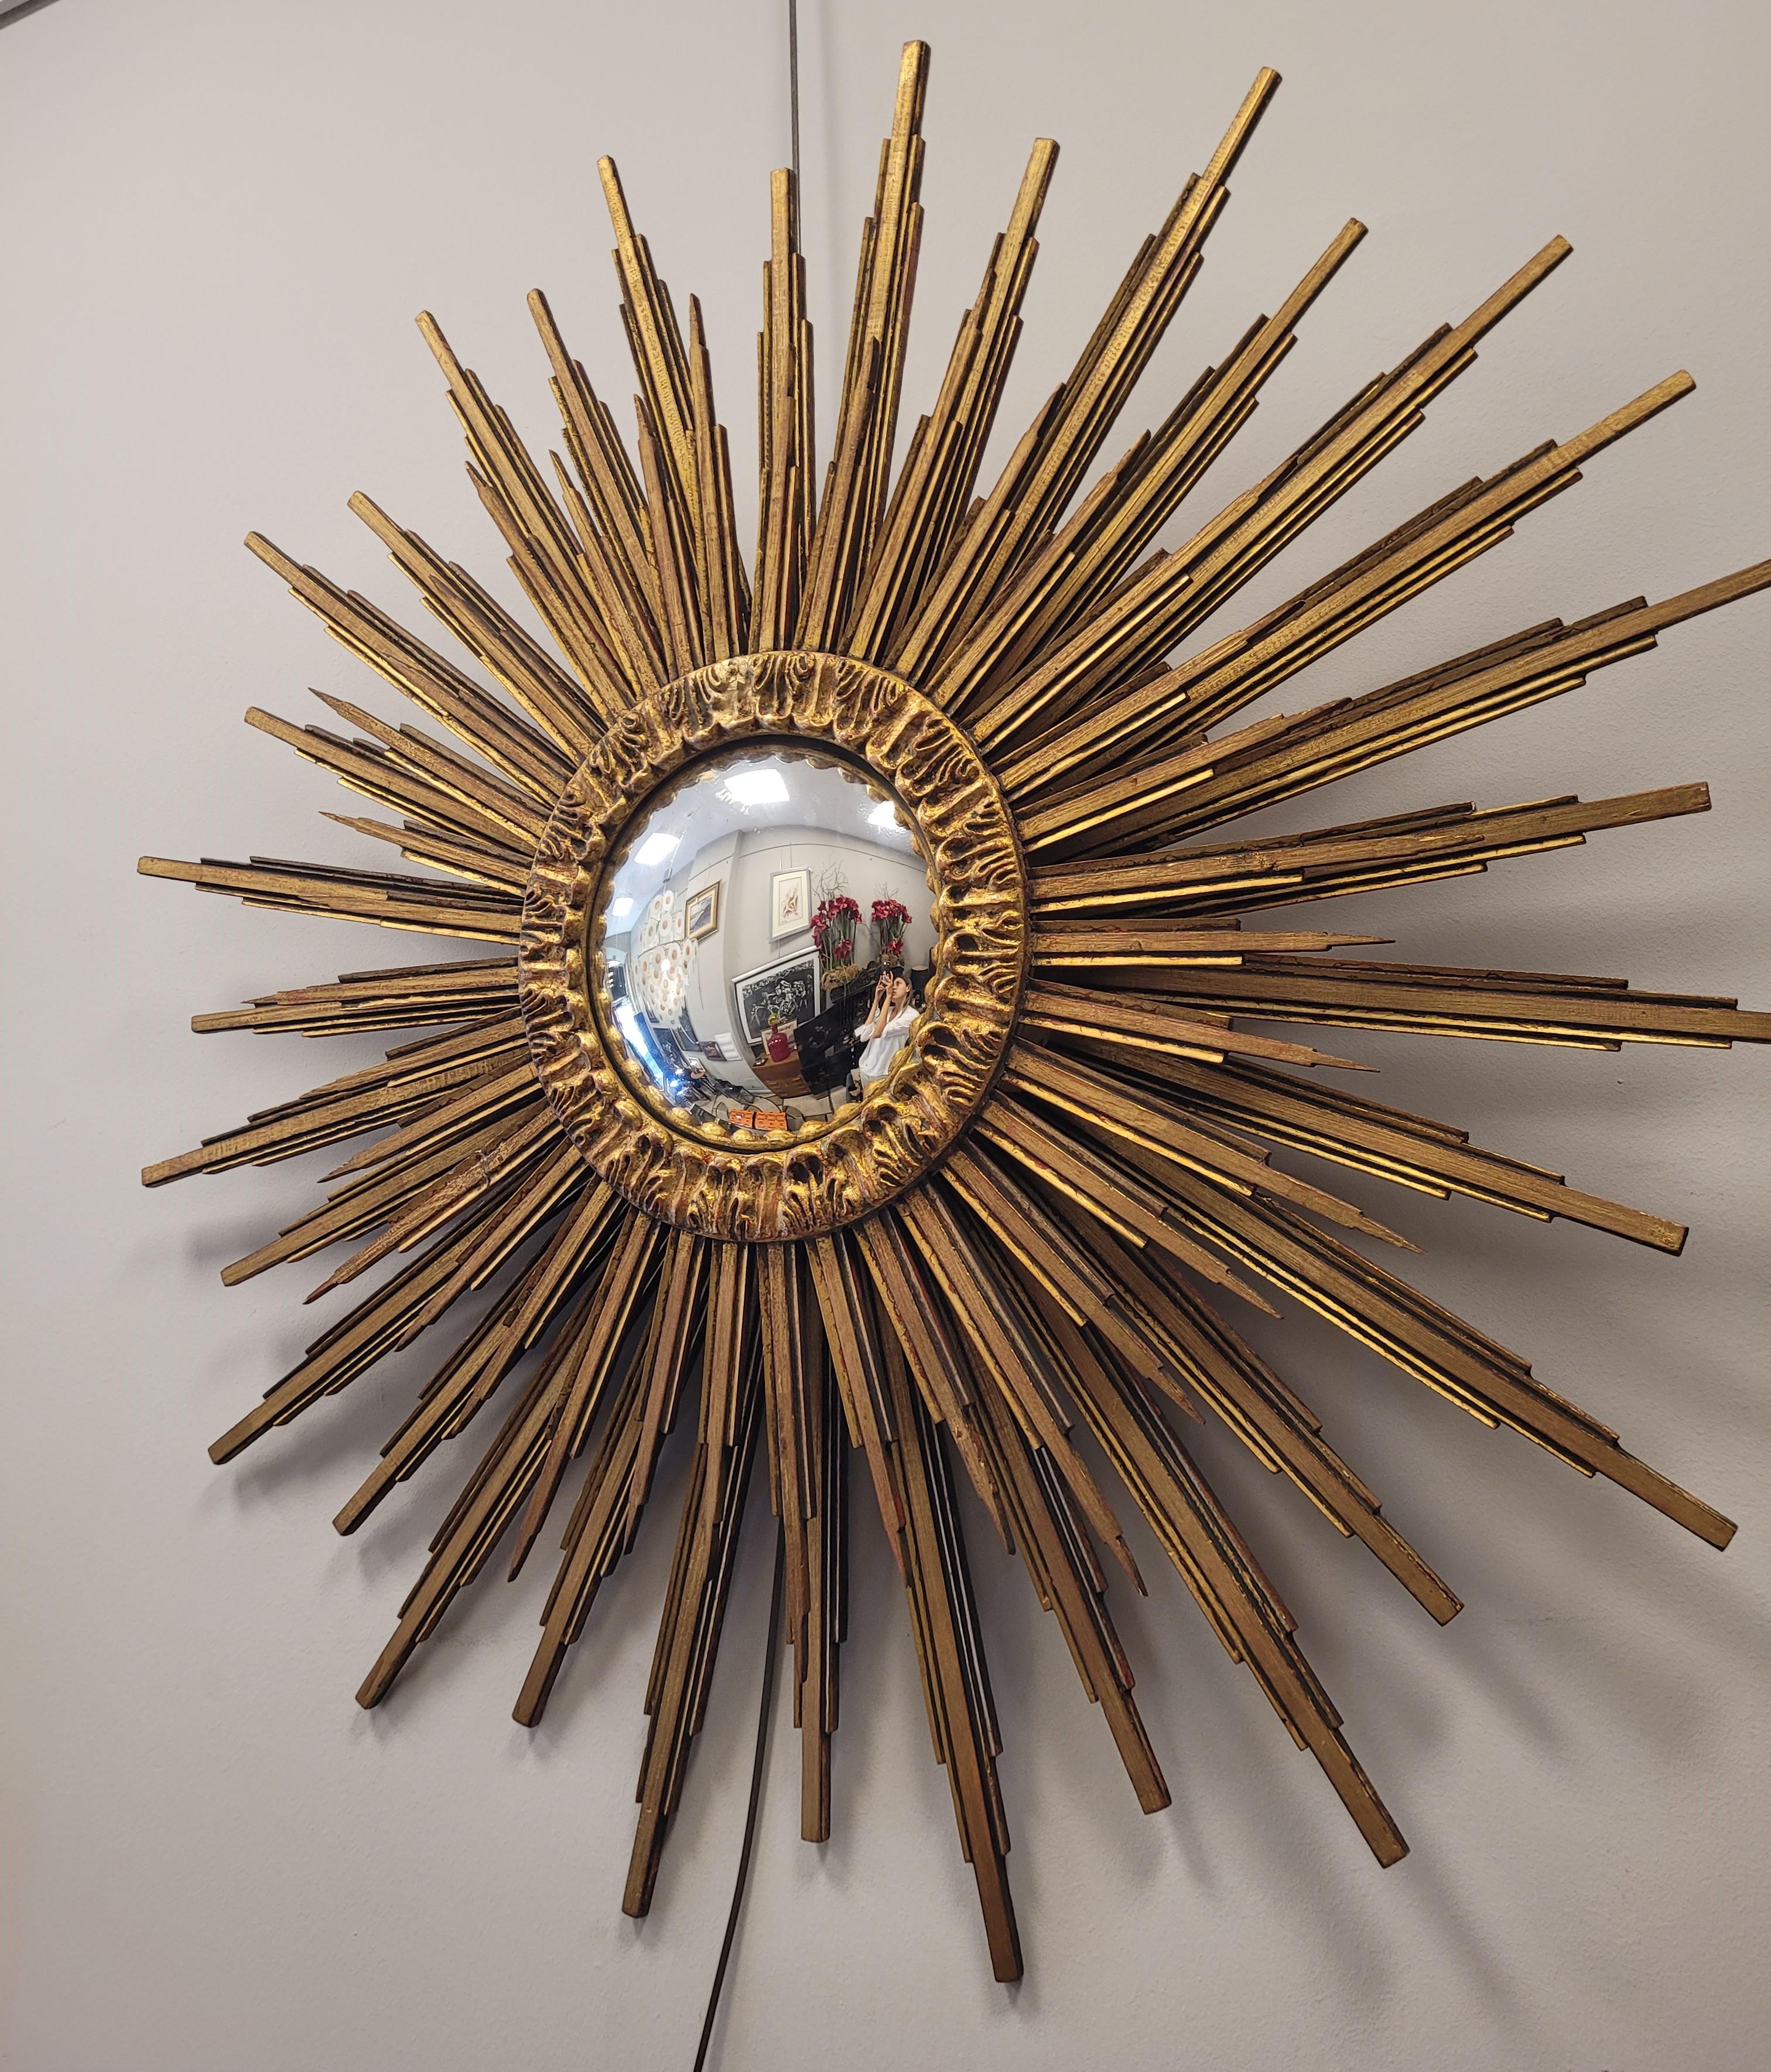 Superbe miroir convexe Sunburst en forme de soleil rayonnant, fabriqué en France dans les années 90, selon un style Art déco bien défini. Structure complète en bois sculpté et doré. Comme il est d'usage dans ce type de miroir, il comporte deux